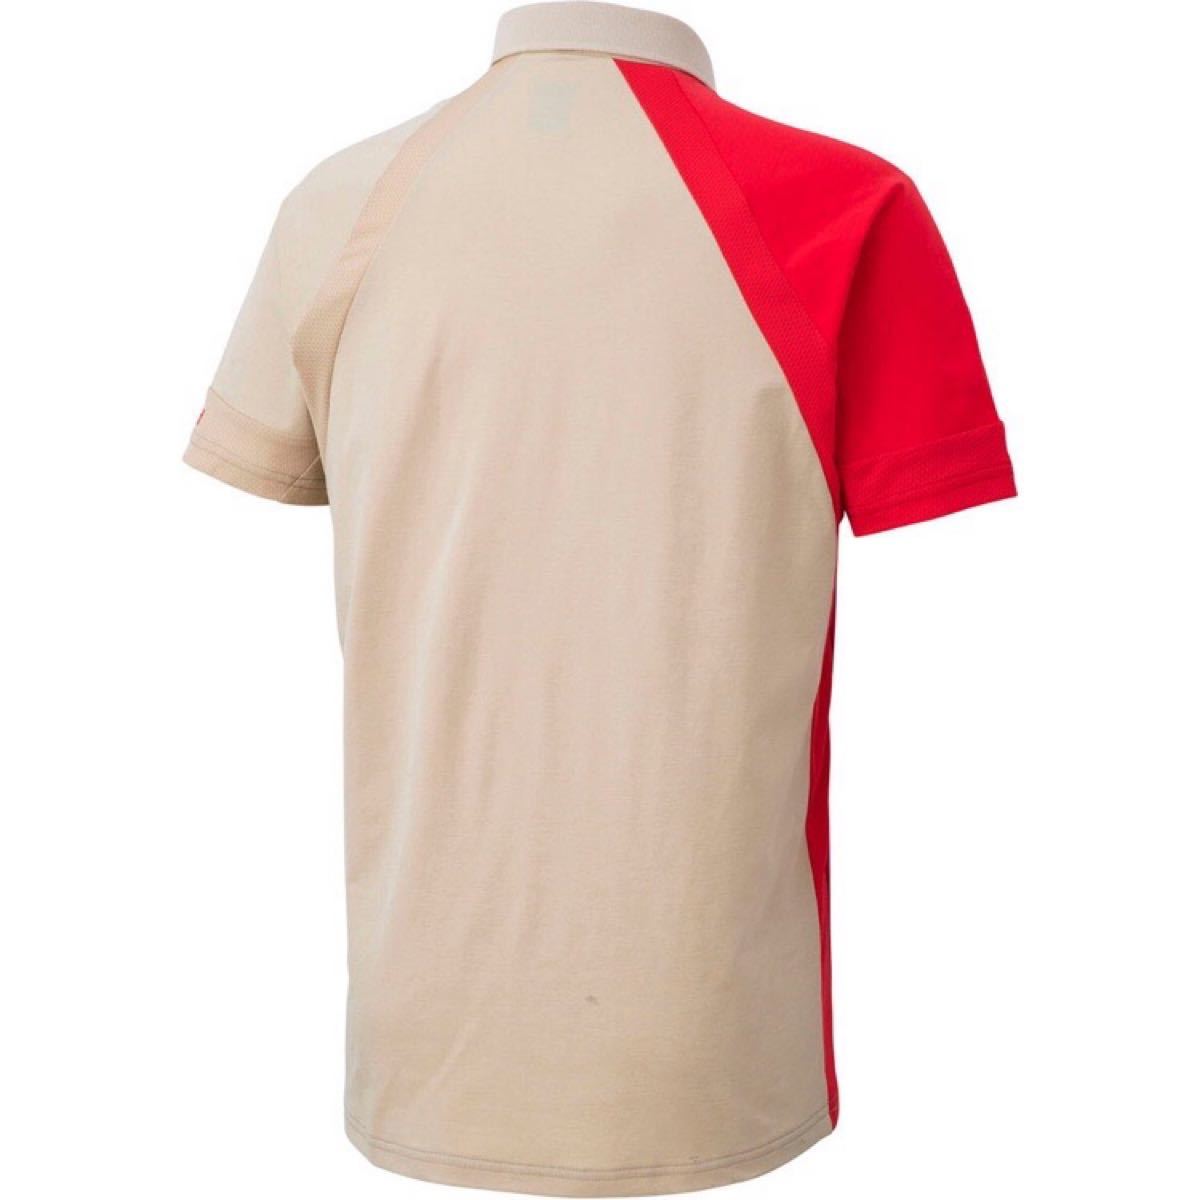 le coq sportif ルコックスポルティフ テニスウェア 半袖ポロシャツ QTMPJA40 ブラウン(茶) メンズL 新品